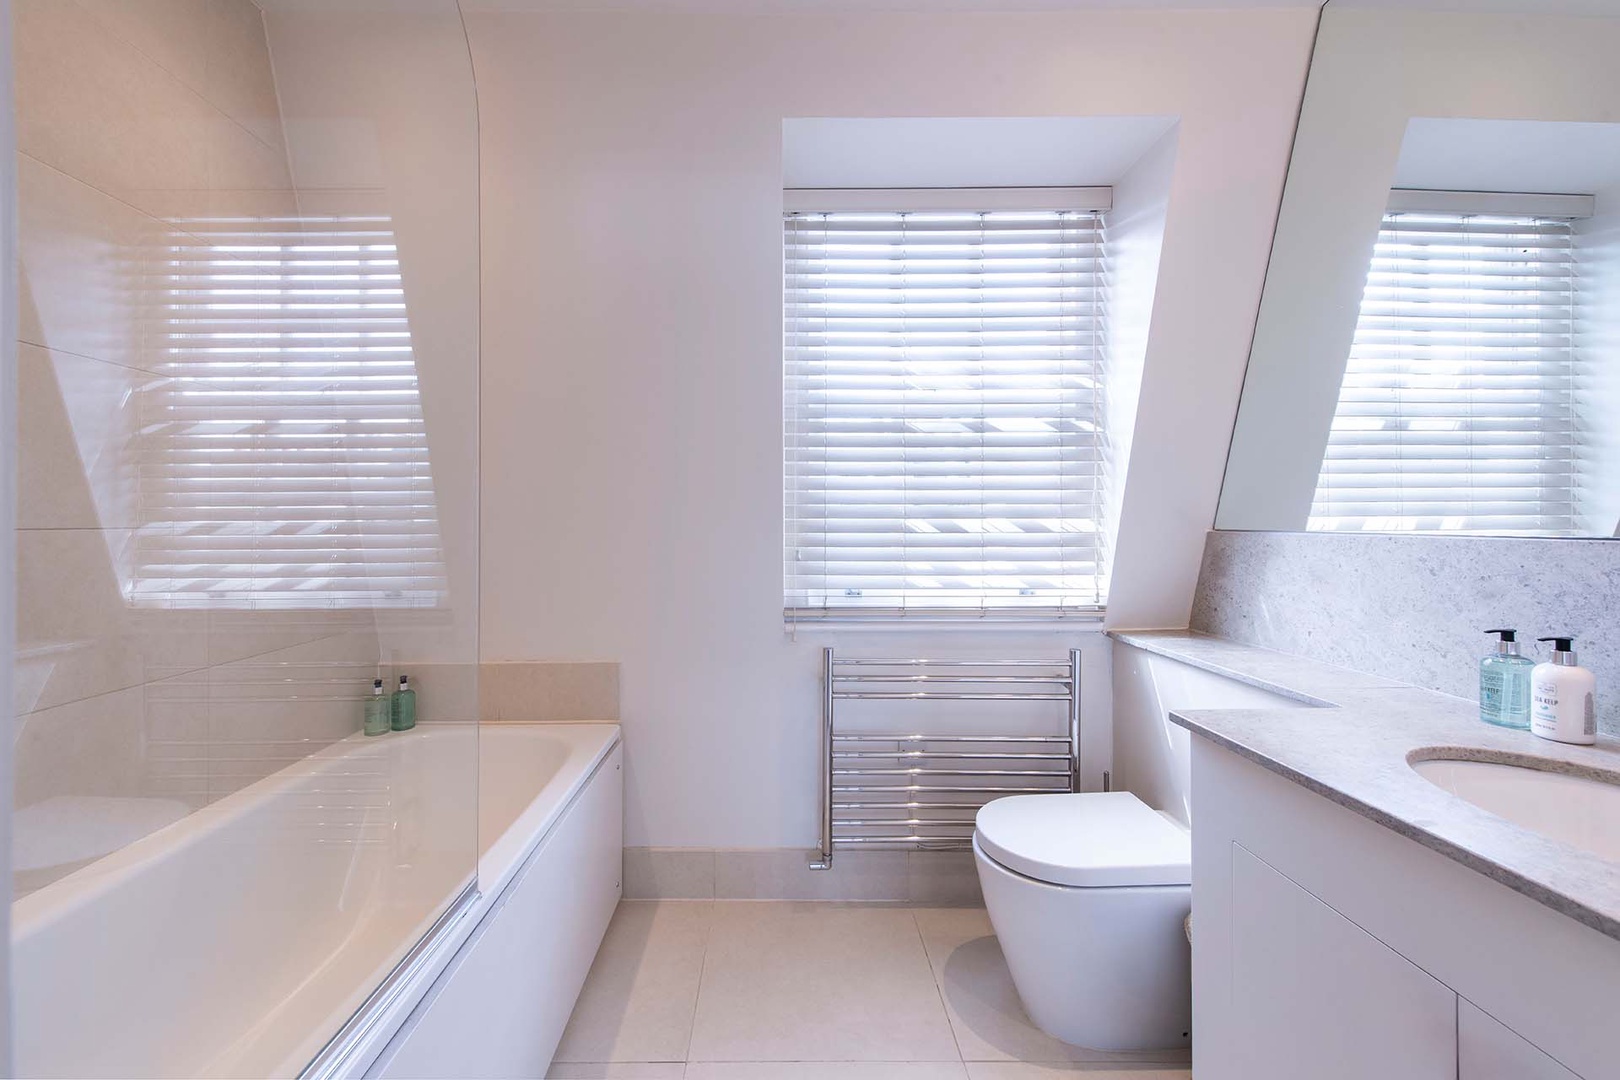 En suite has a combo bathtub/shower, toilet and sink.